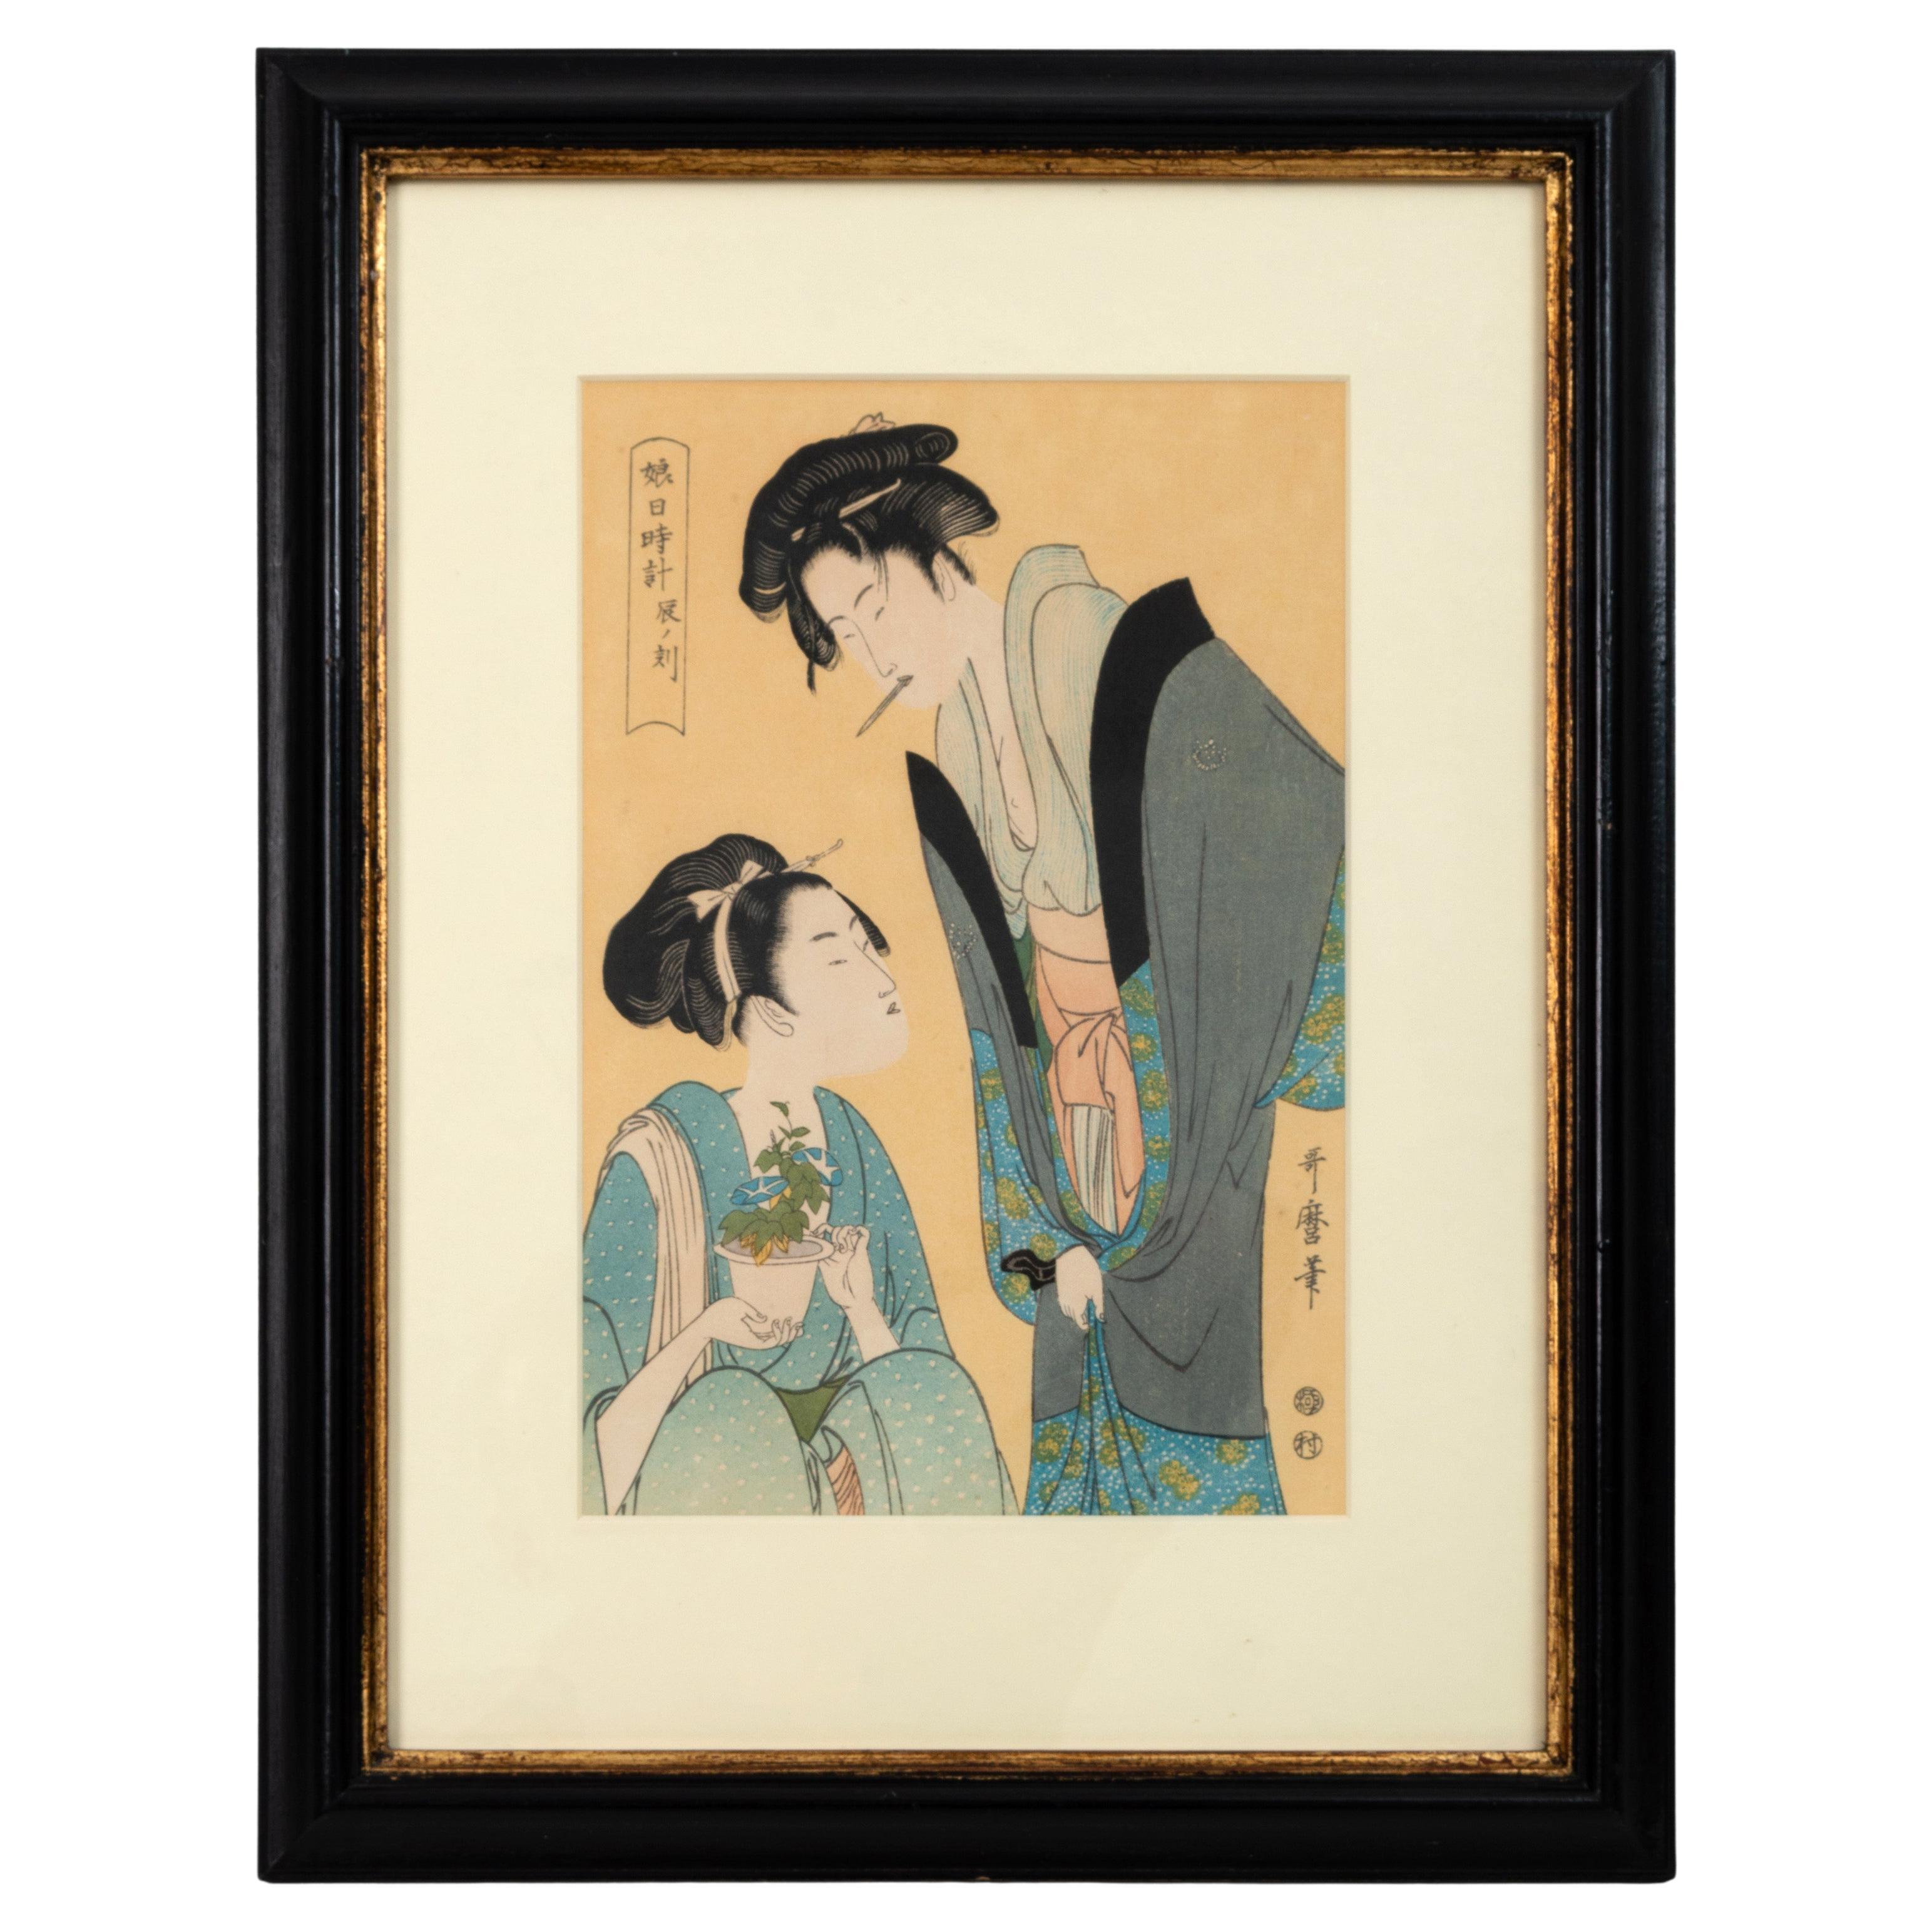 Impression japonaise sur bois des couronnes des couronnes, Kitagawa Utamaro, début du 20e siècle